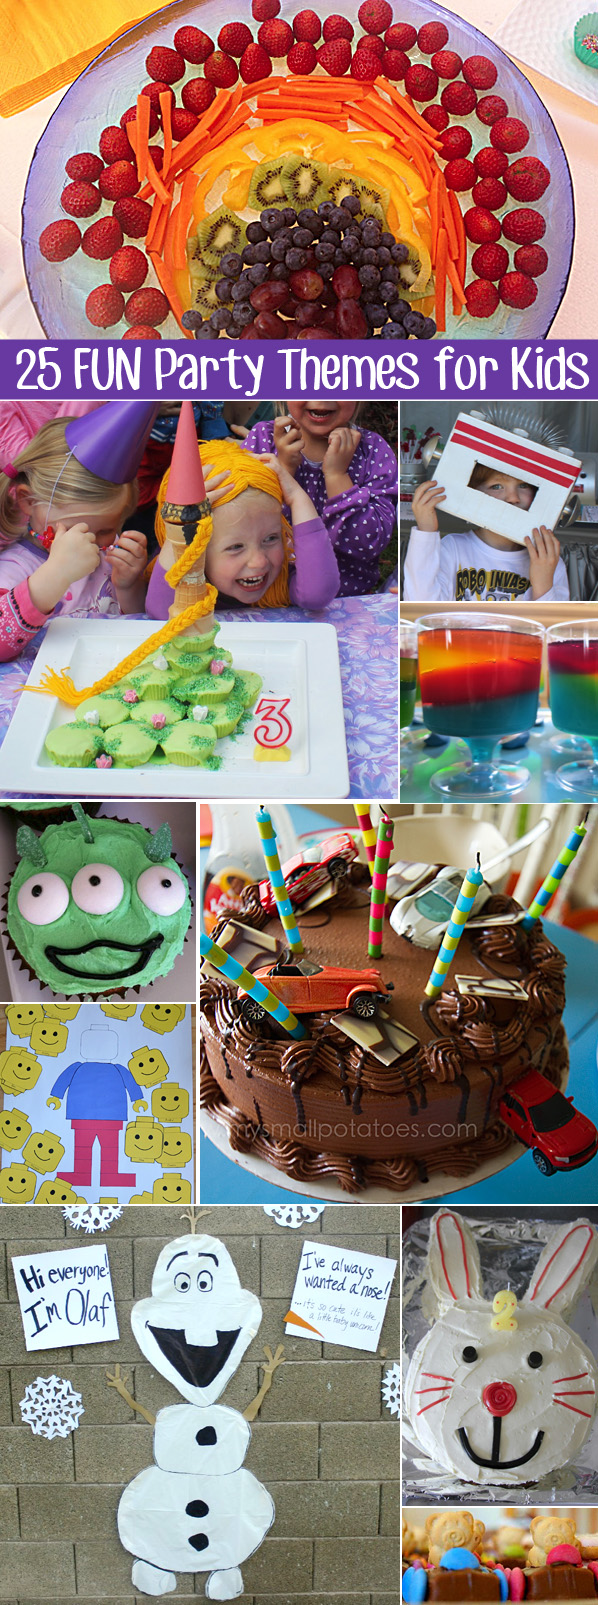 25 Fun Party Theme Ideas for Kids